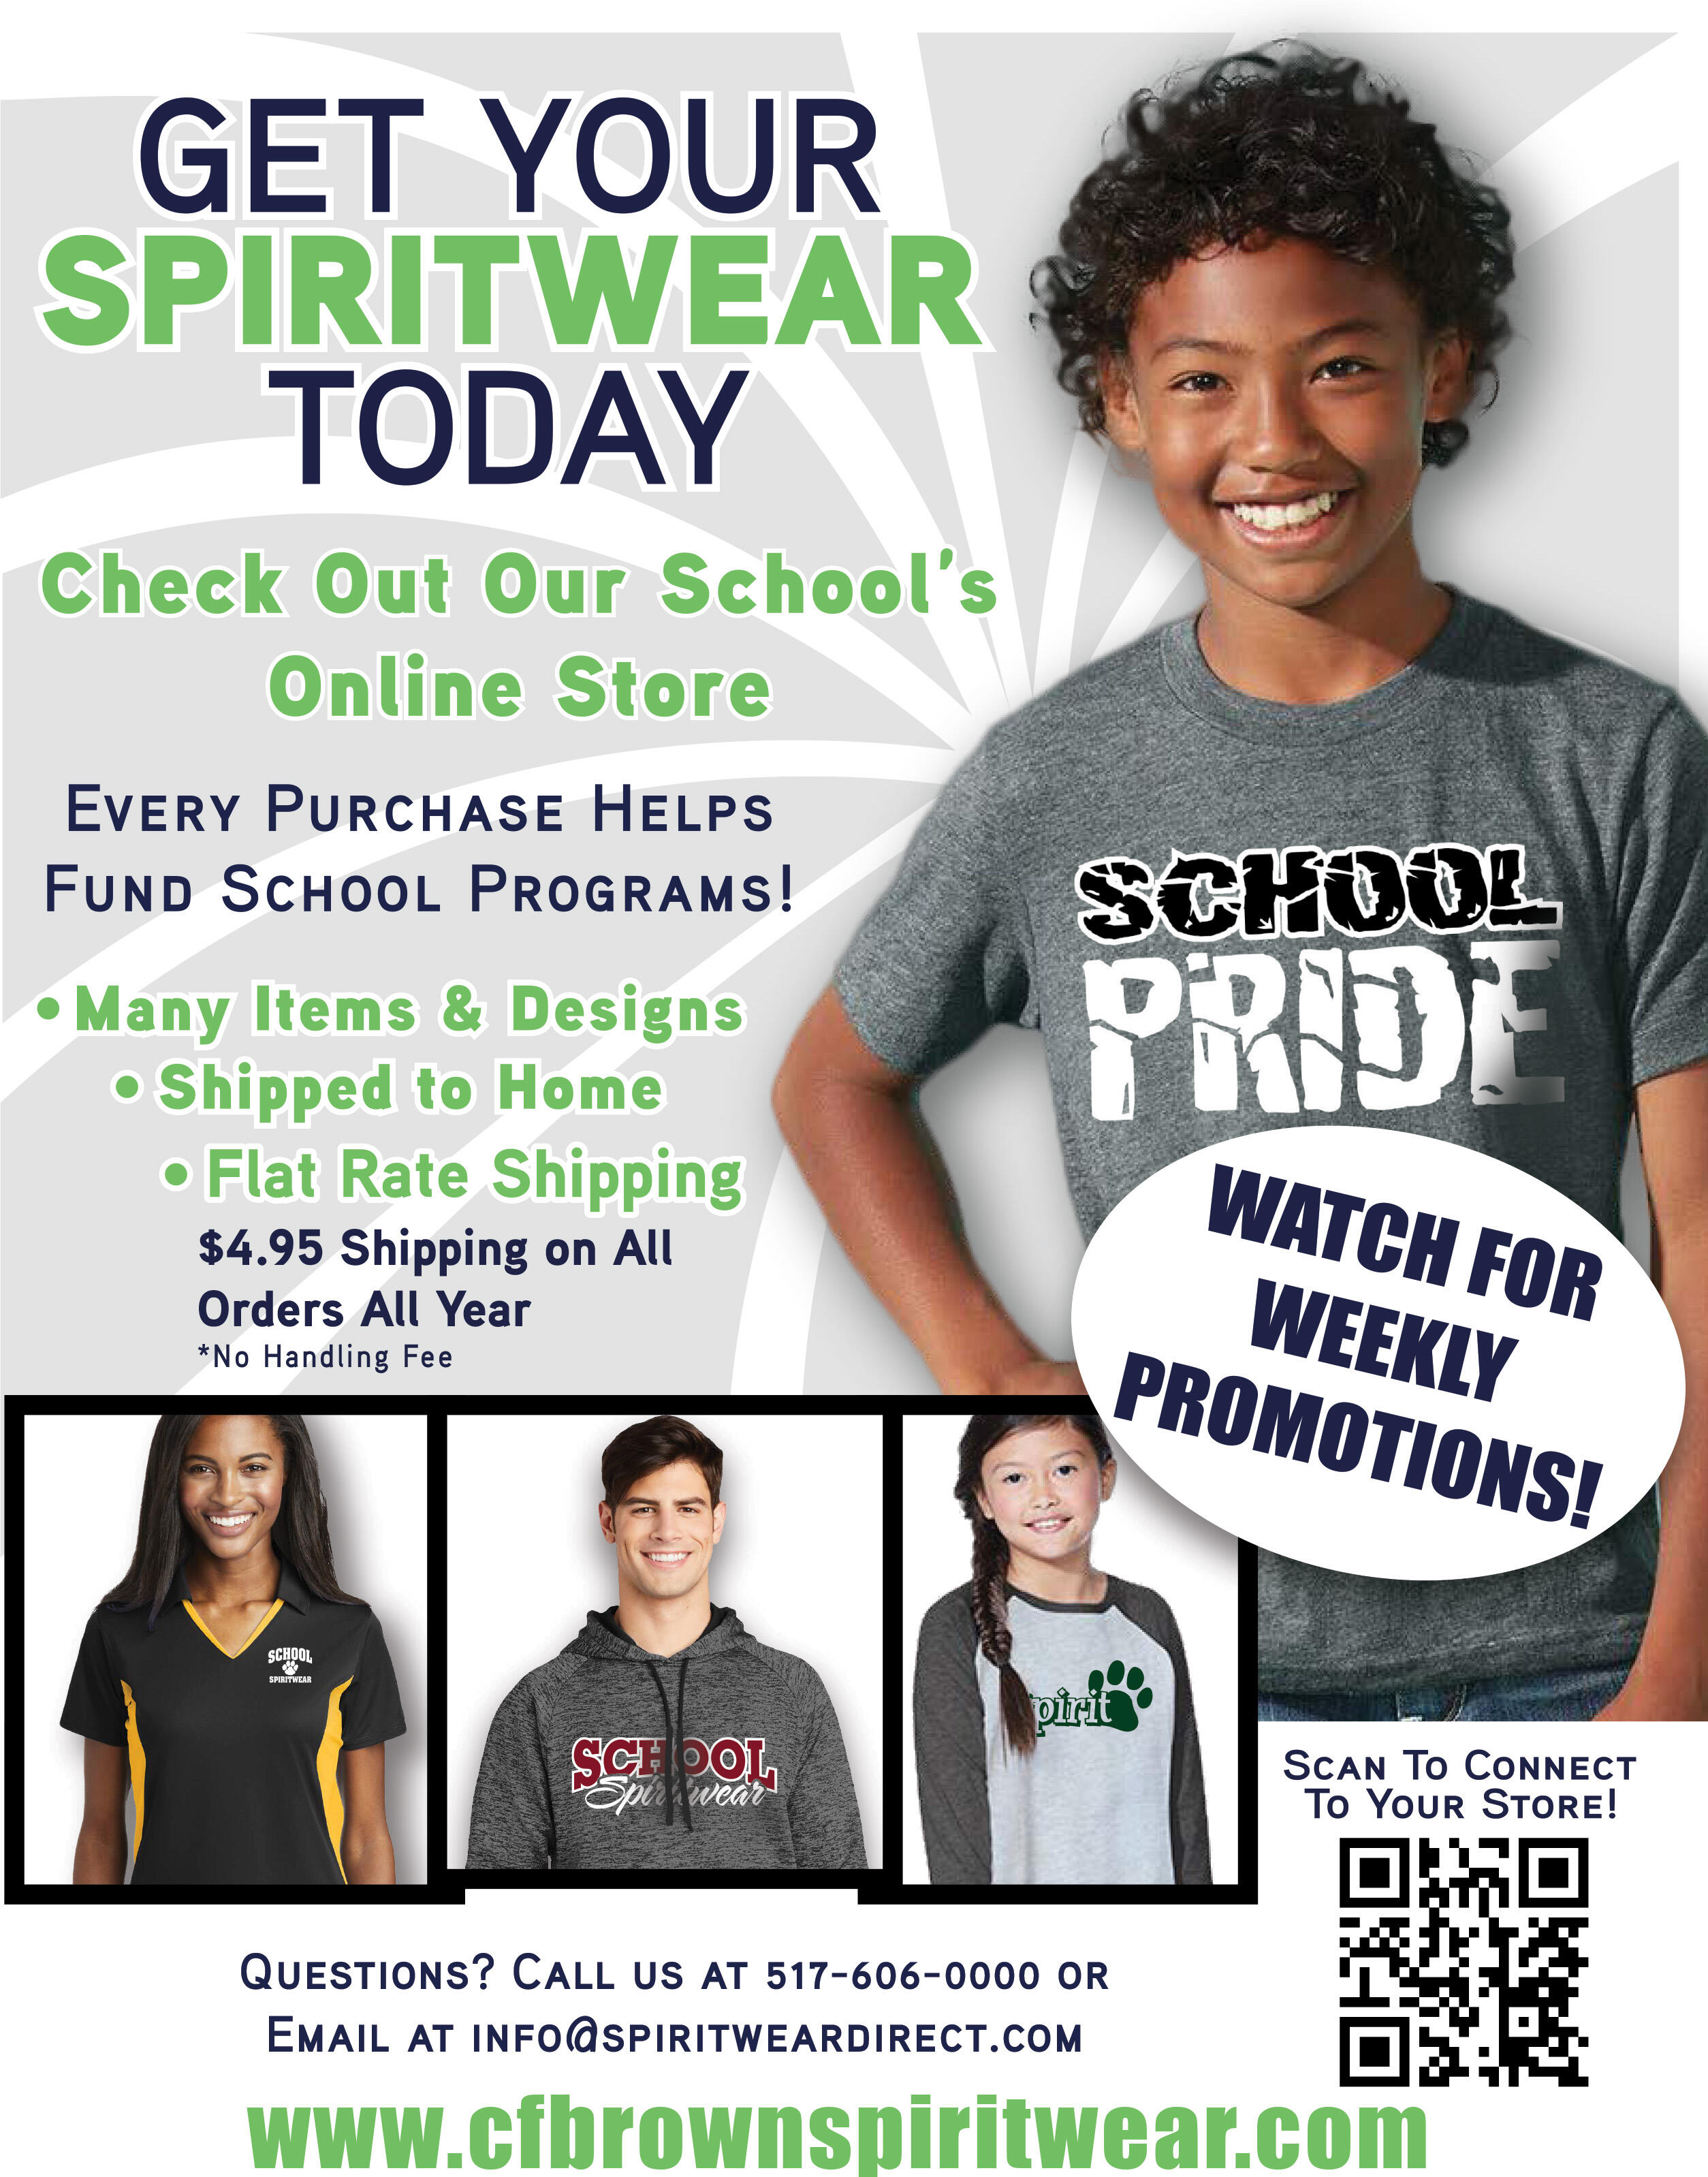 Get your school gear today!